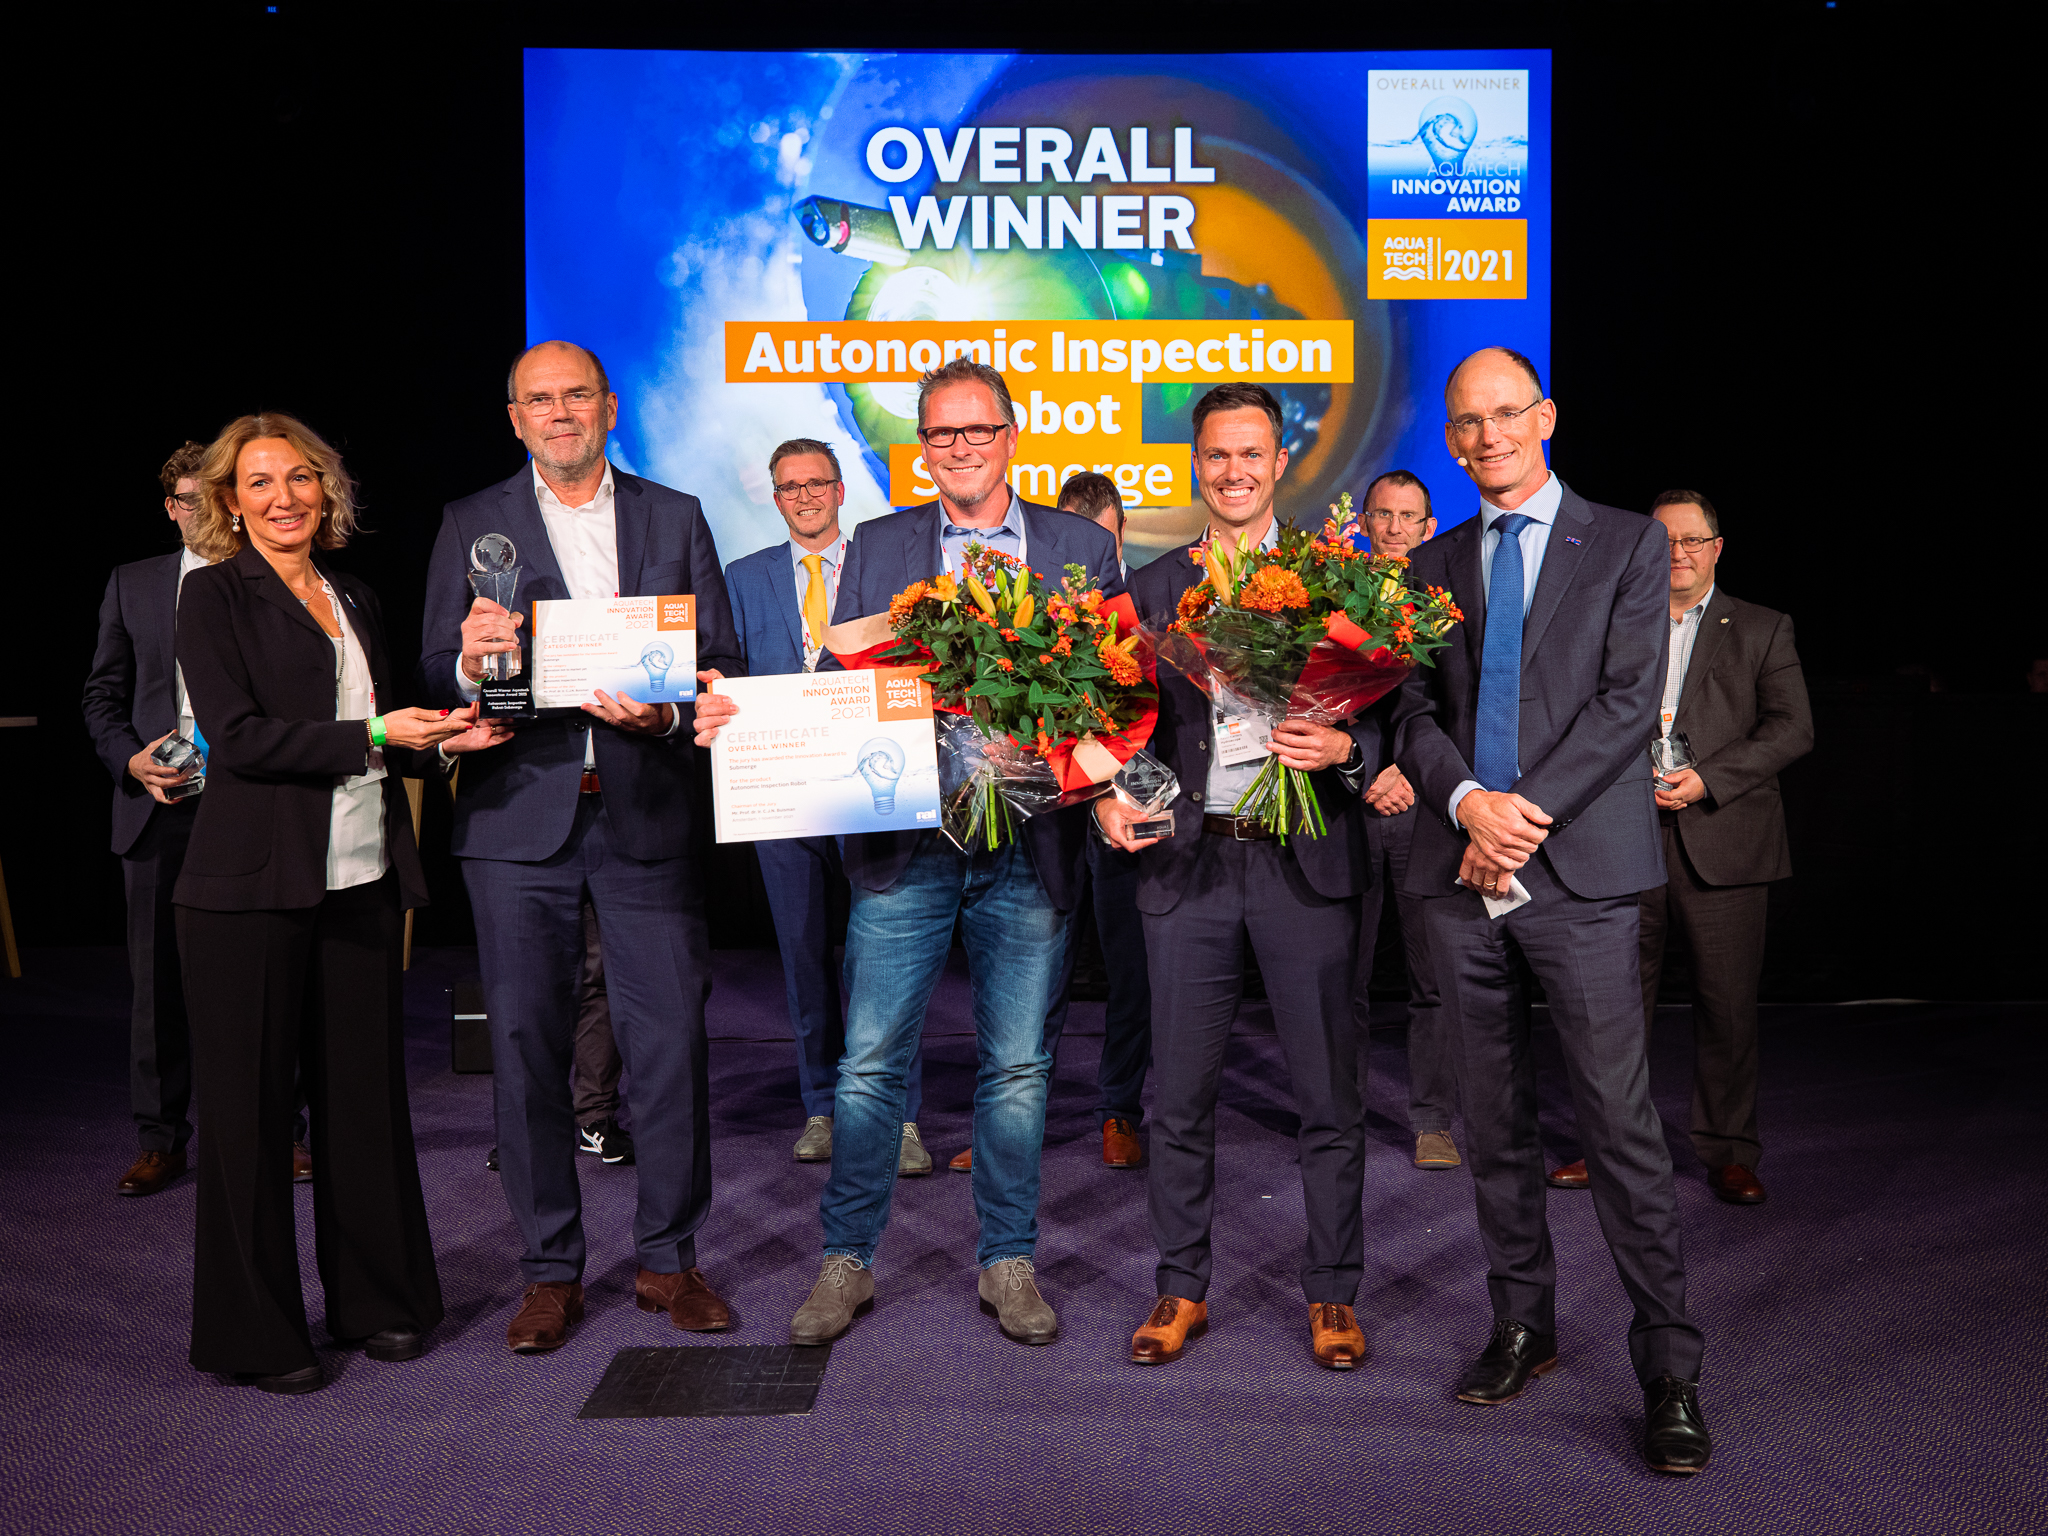 Overall Winner Innovation Awards 2021